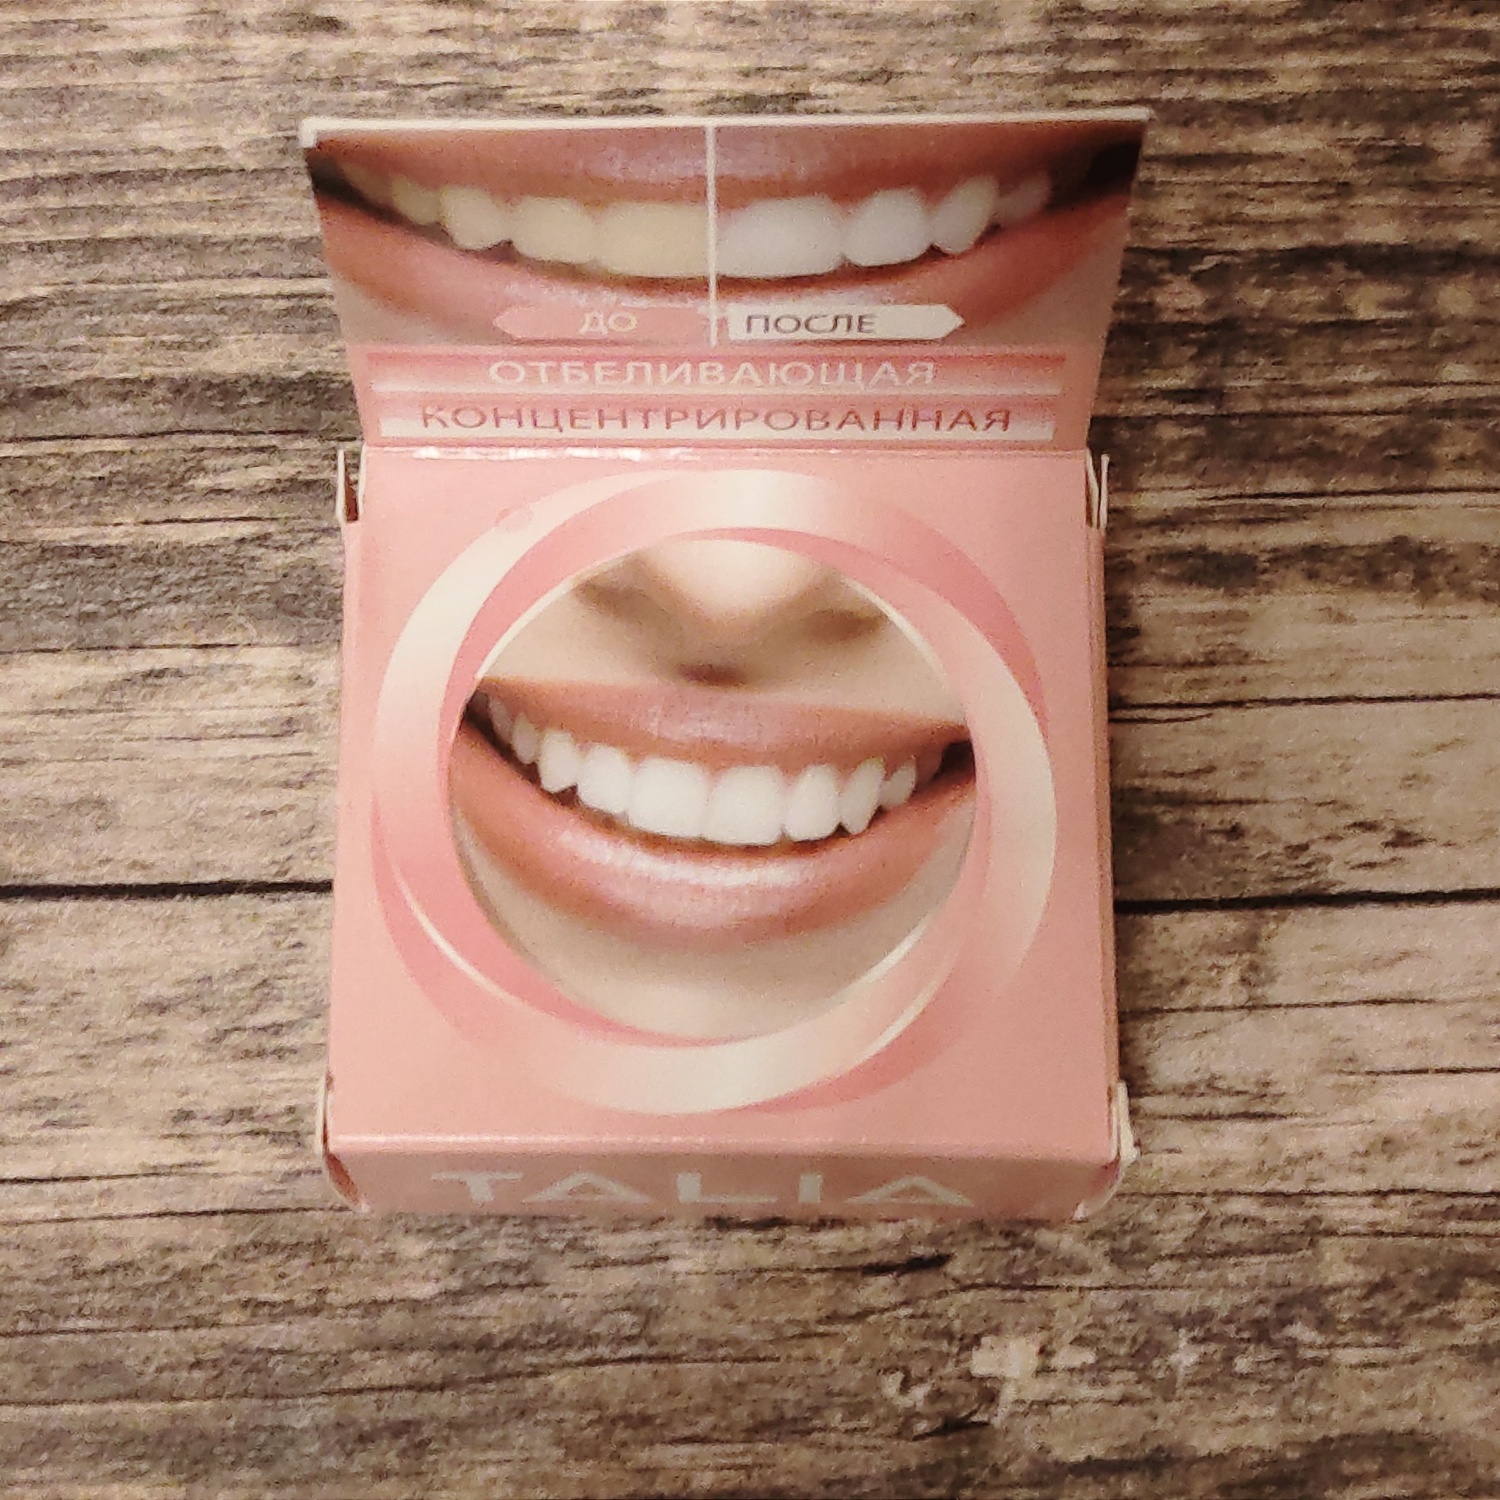 Зубная паста Talia концентрированная отбеливающая со вкусом клубники фото